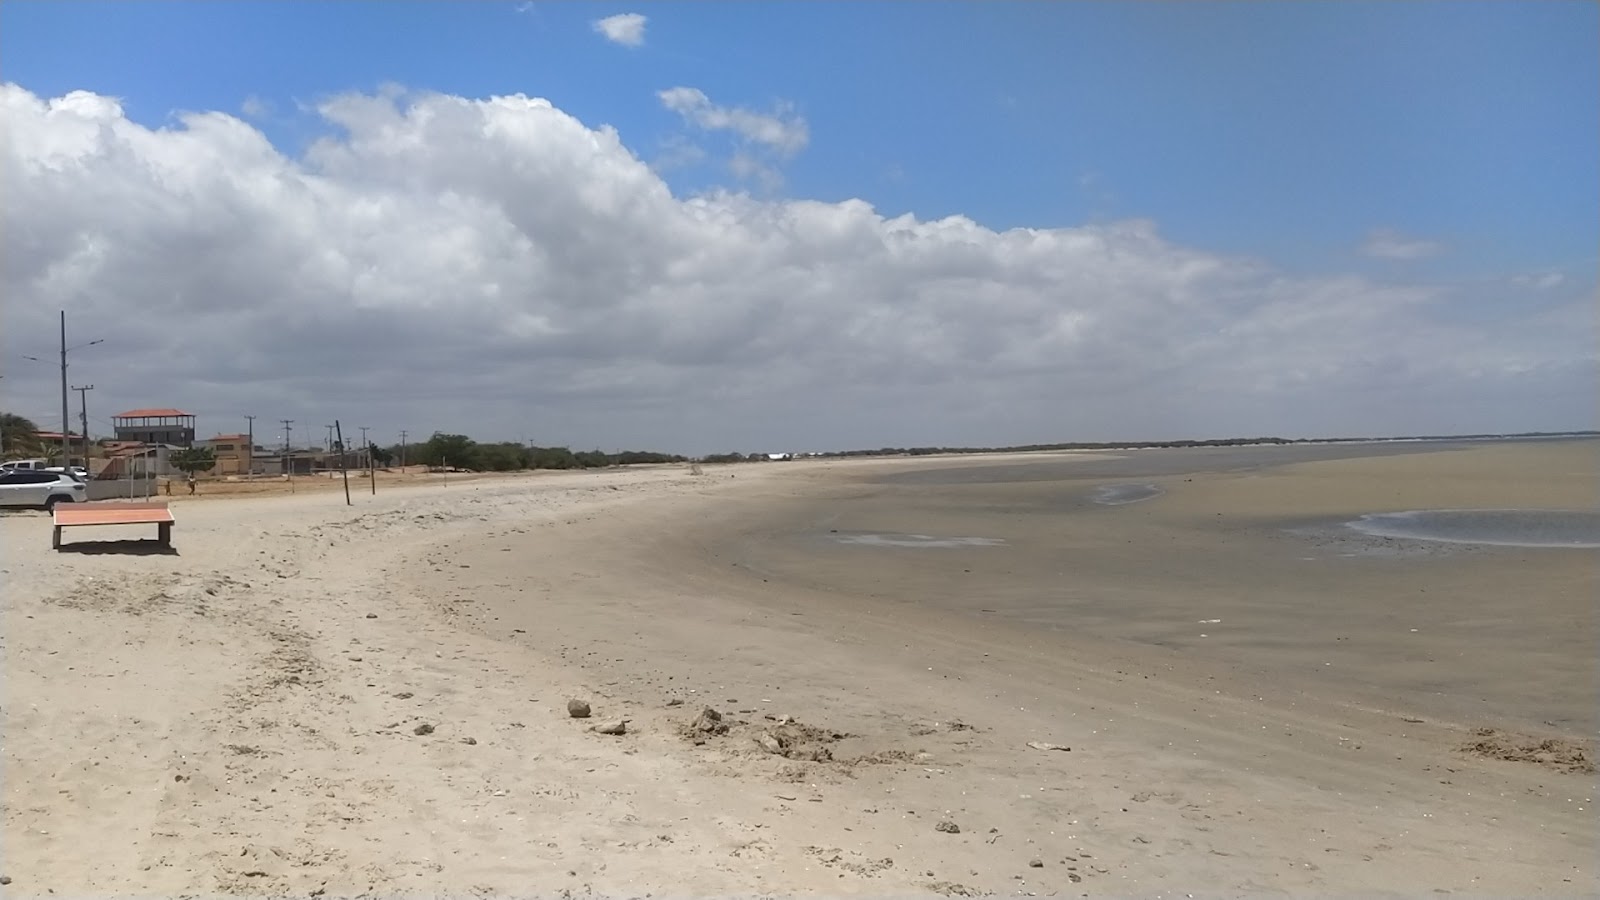 Zdjęcie Plaża Upanema - popularne miejsce wśród znawców relaksu